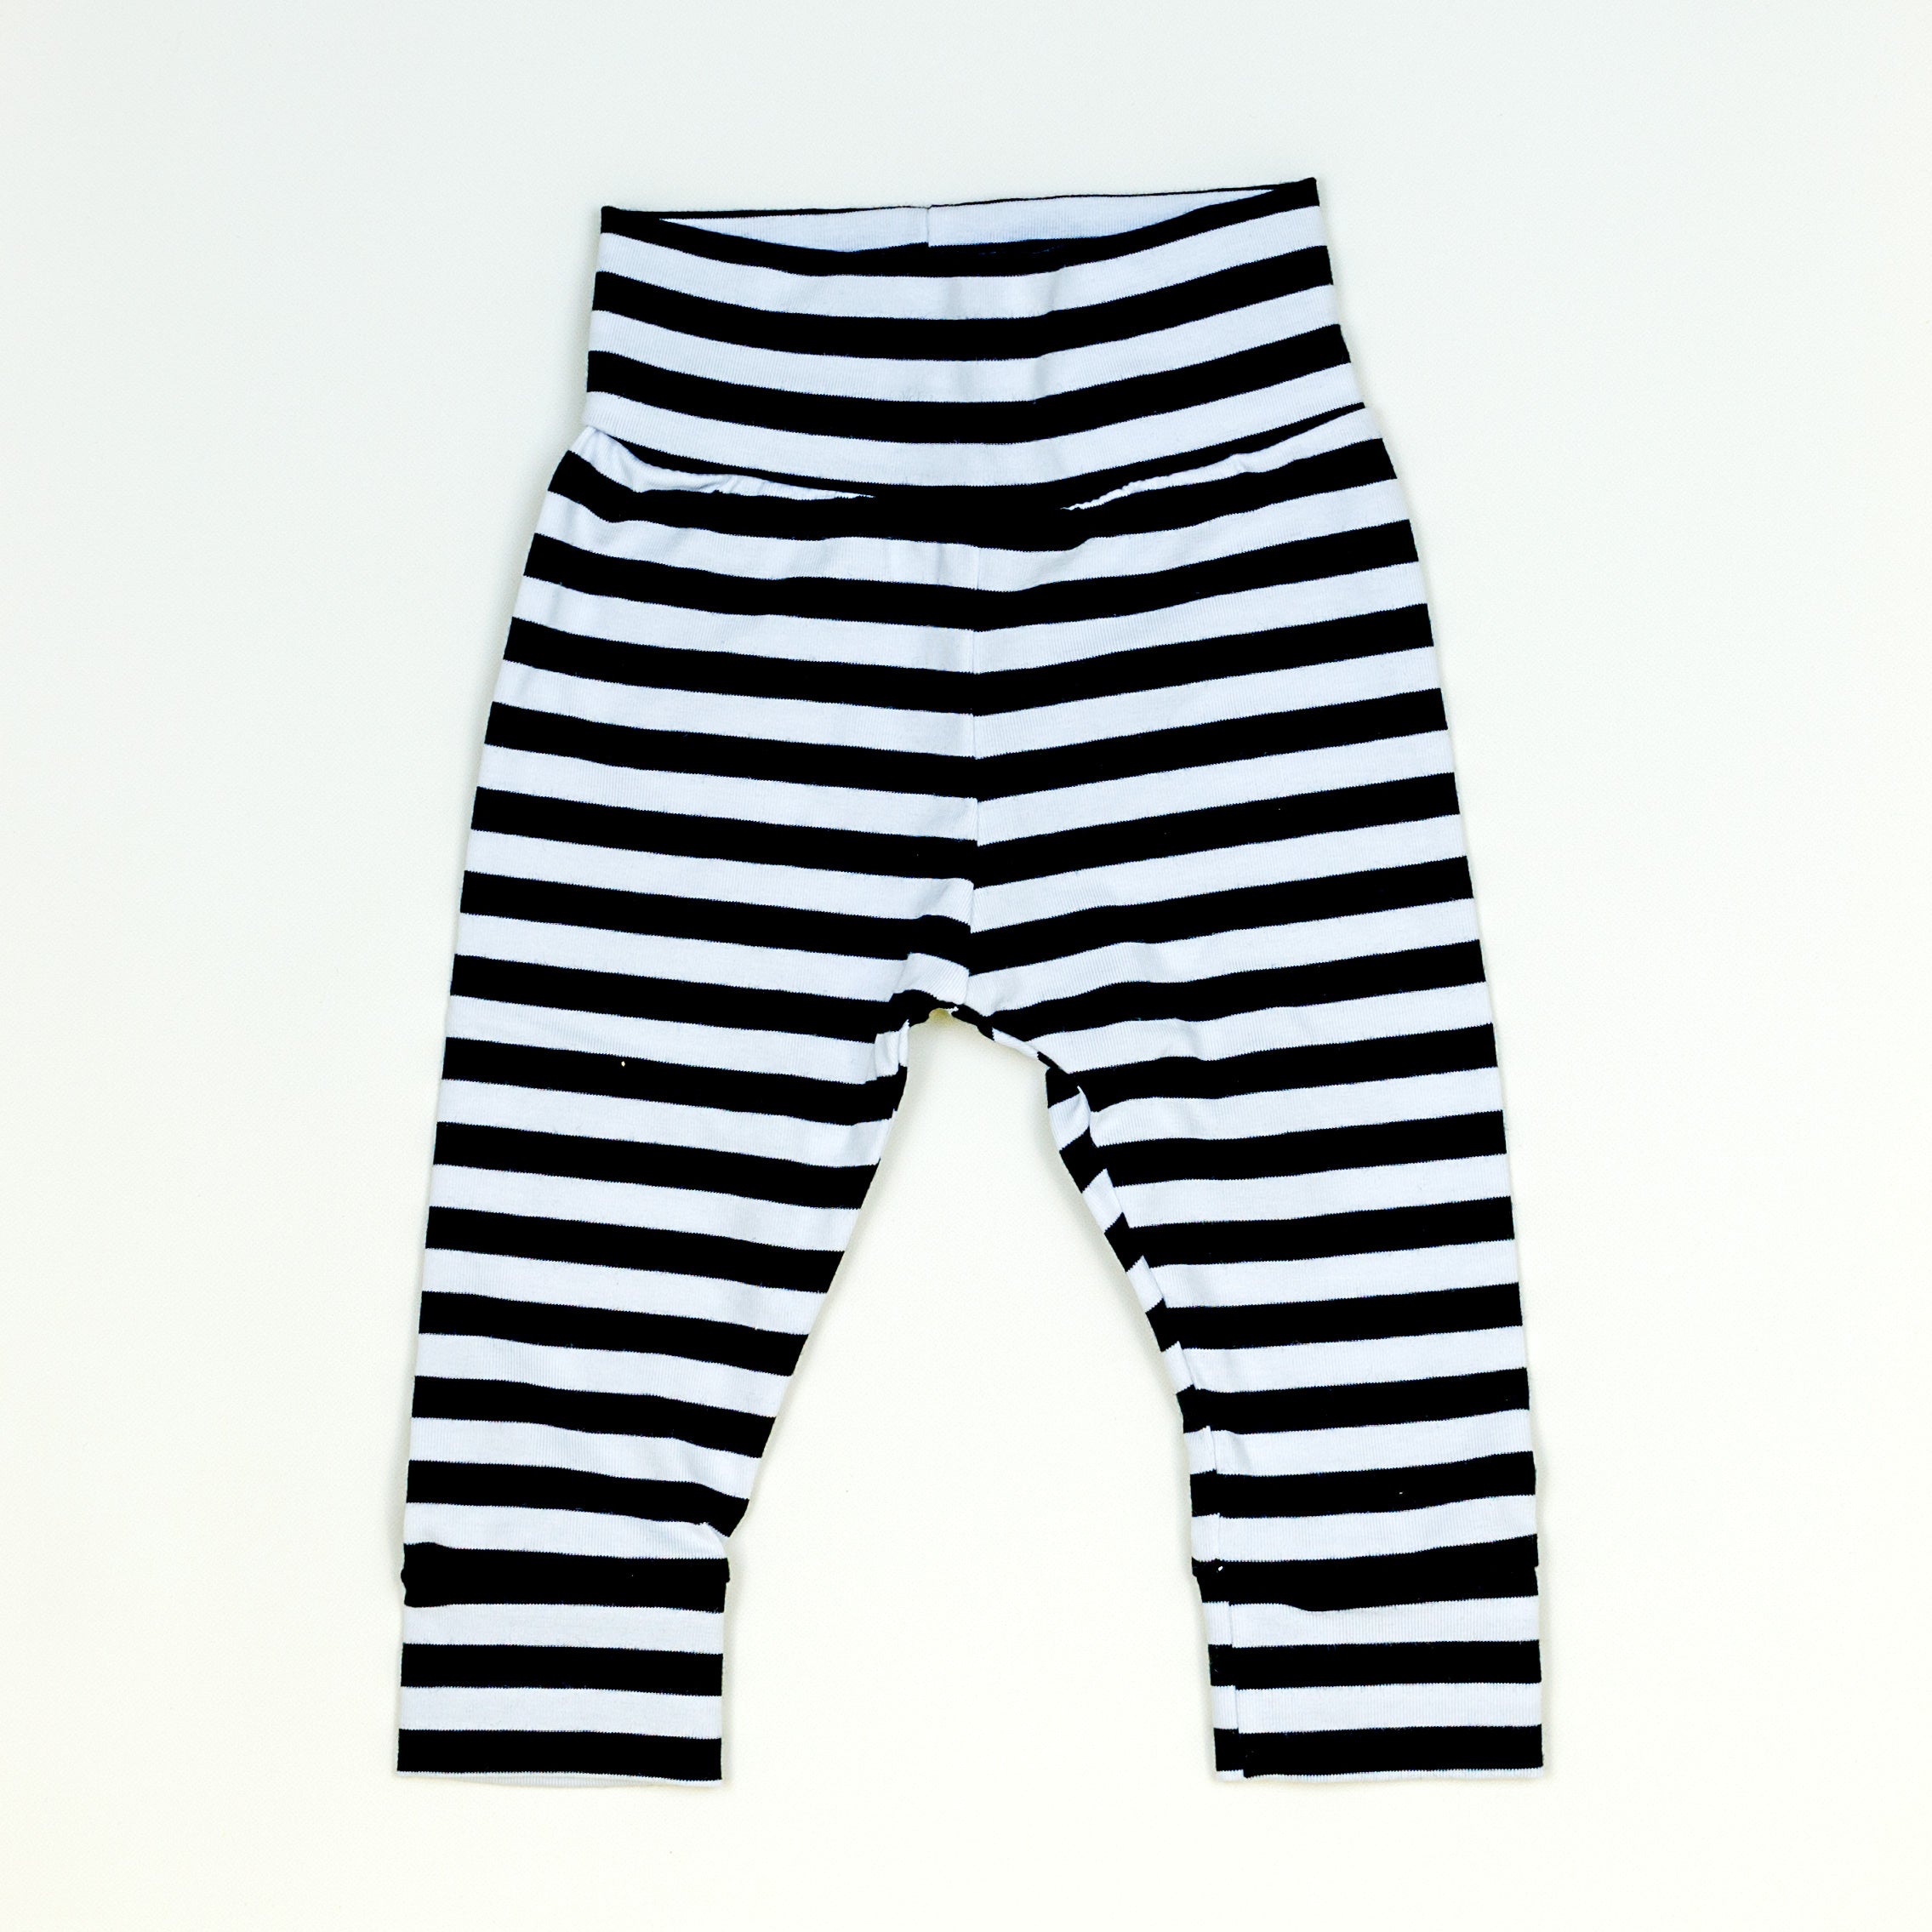 https://cuddlesleepdream.com/cdn/shop/files/cuddle-sleep-dream-black-white-stripe-leggings-leggings-39773731258587_2271x.jpg?v=1690569081